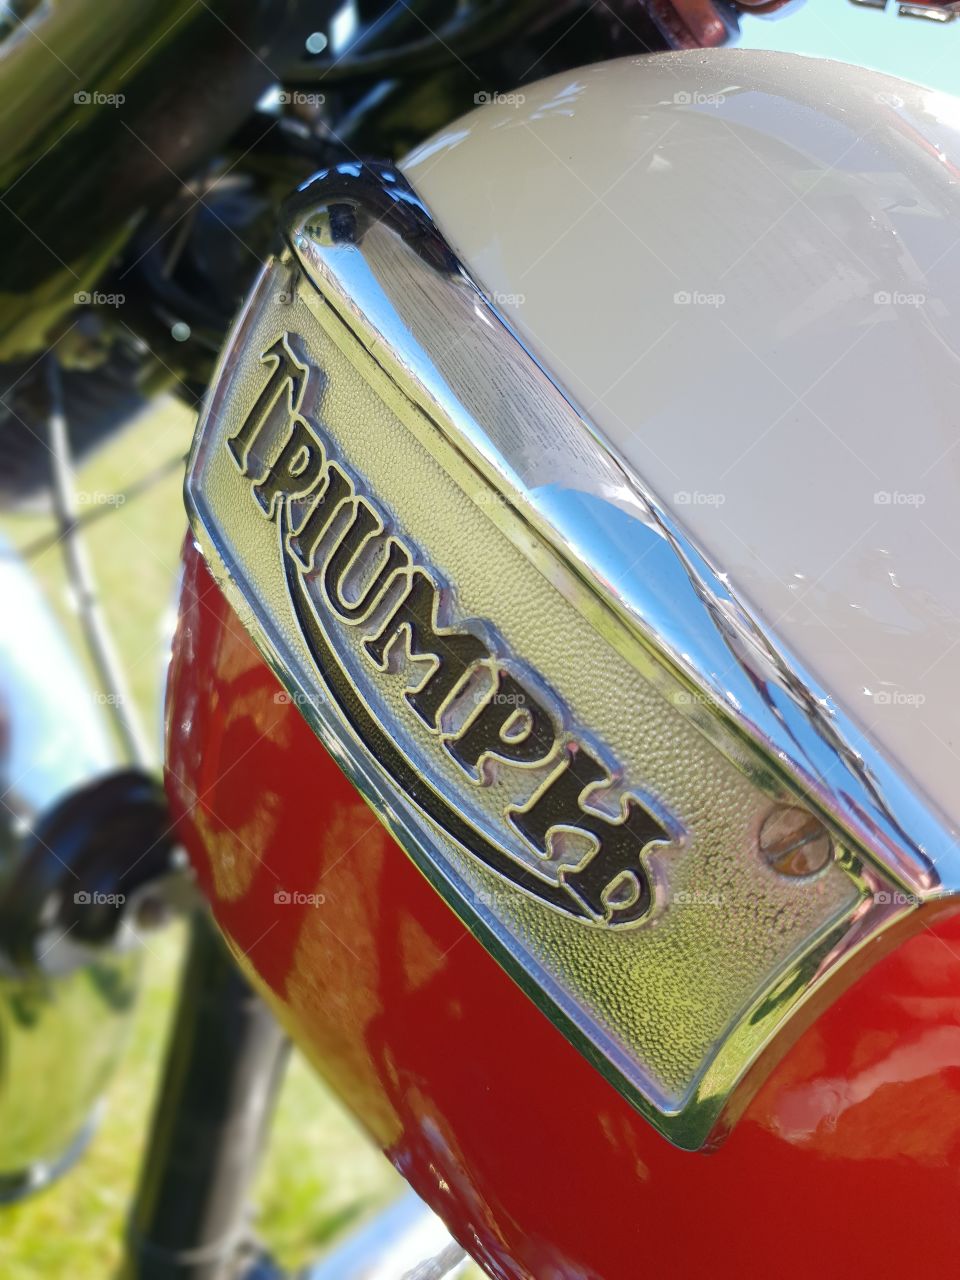 Classic motorcycle tank. Triumph Bonneville.